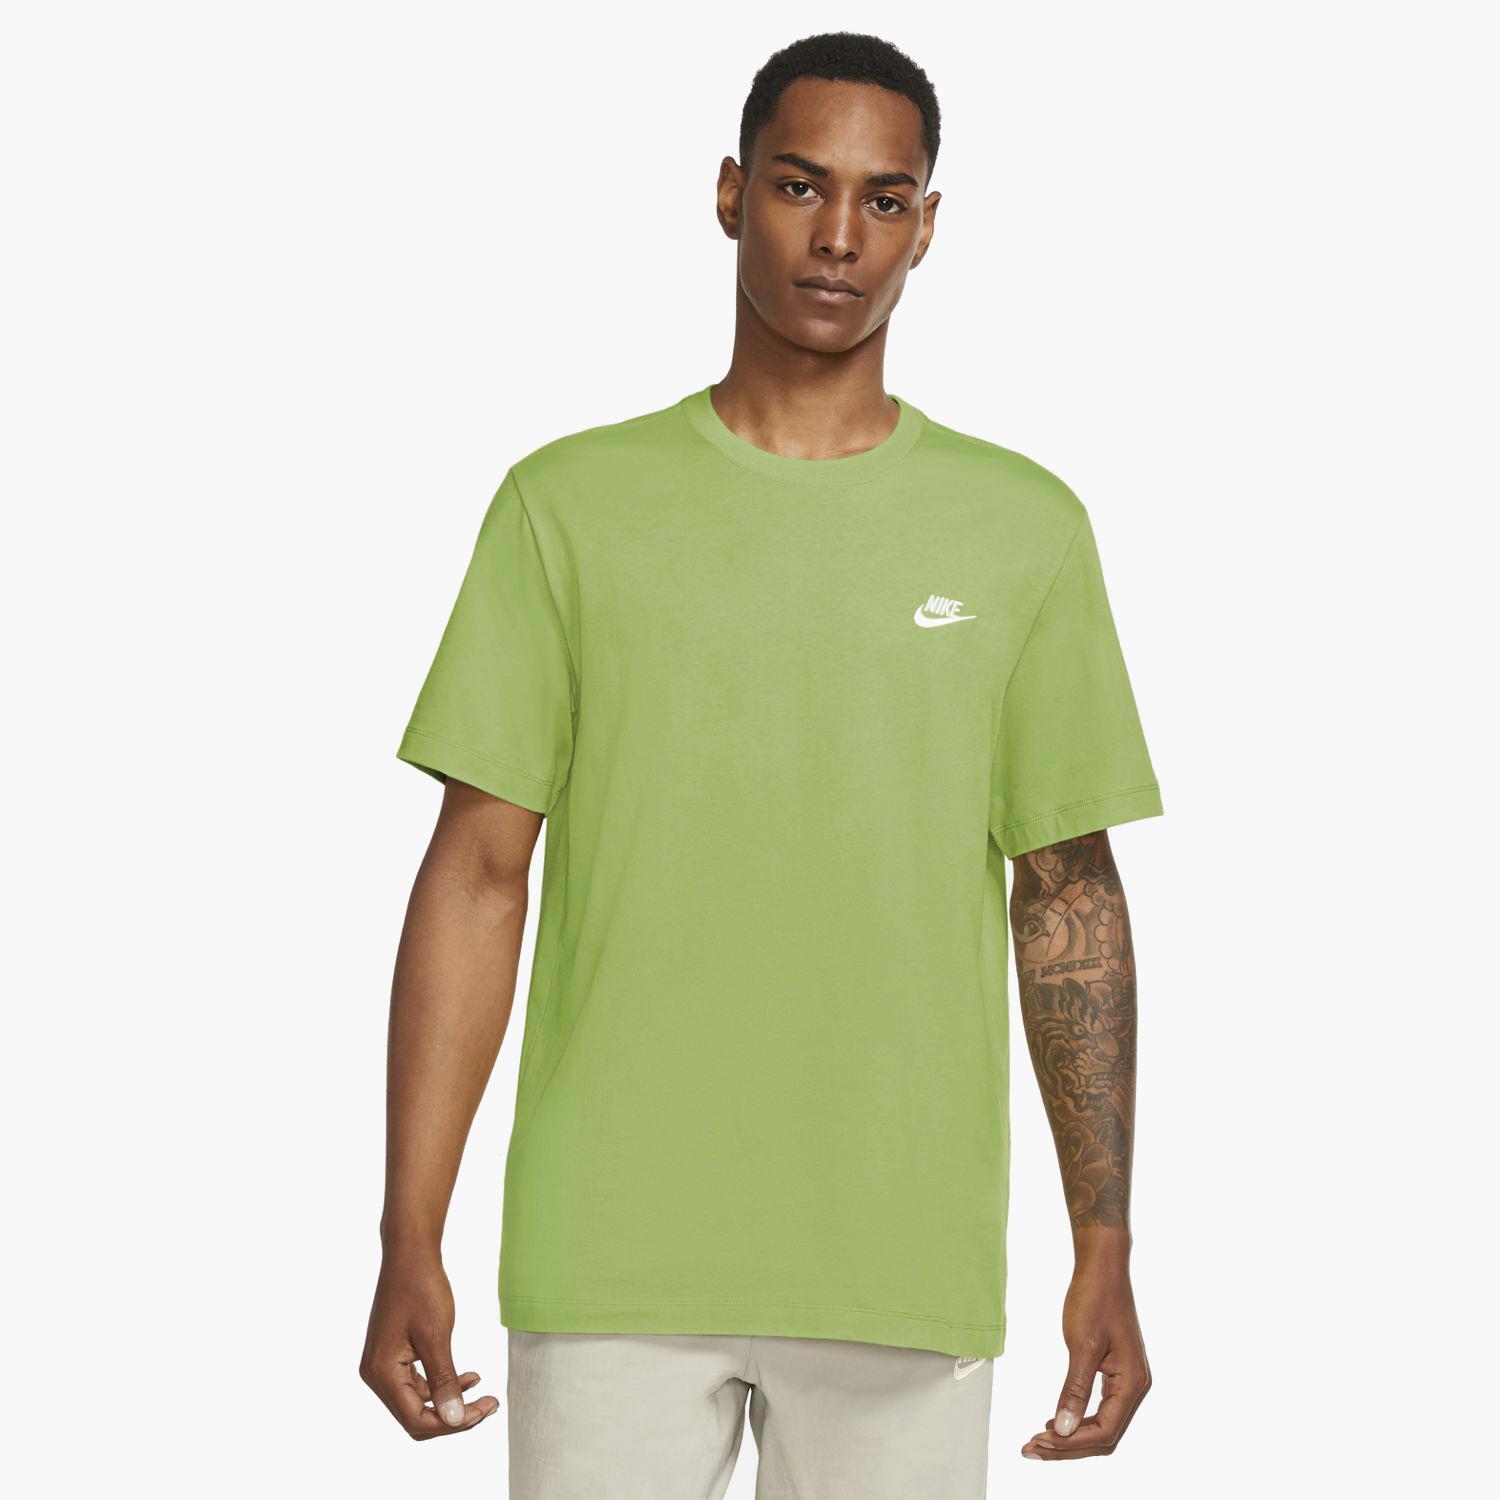 Club Verde - Camiseta Hombre | Sprinter